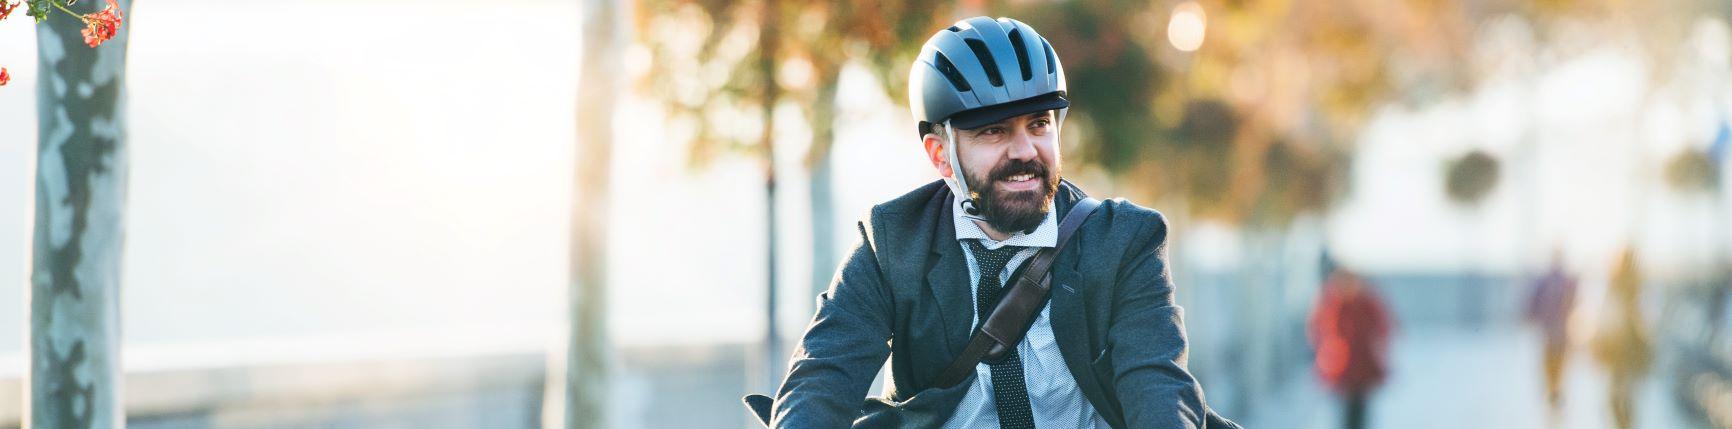 Mann mit Helm auf Dienstrad